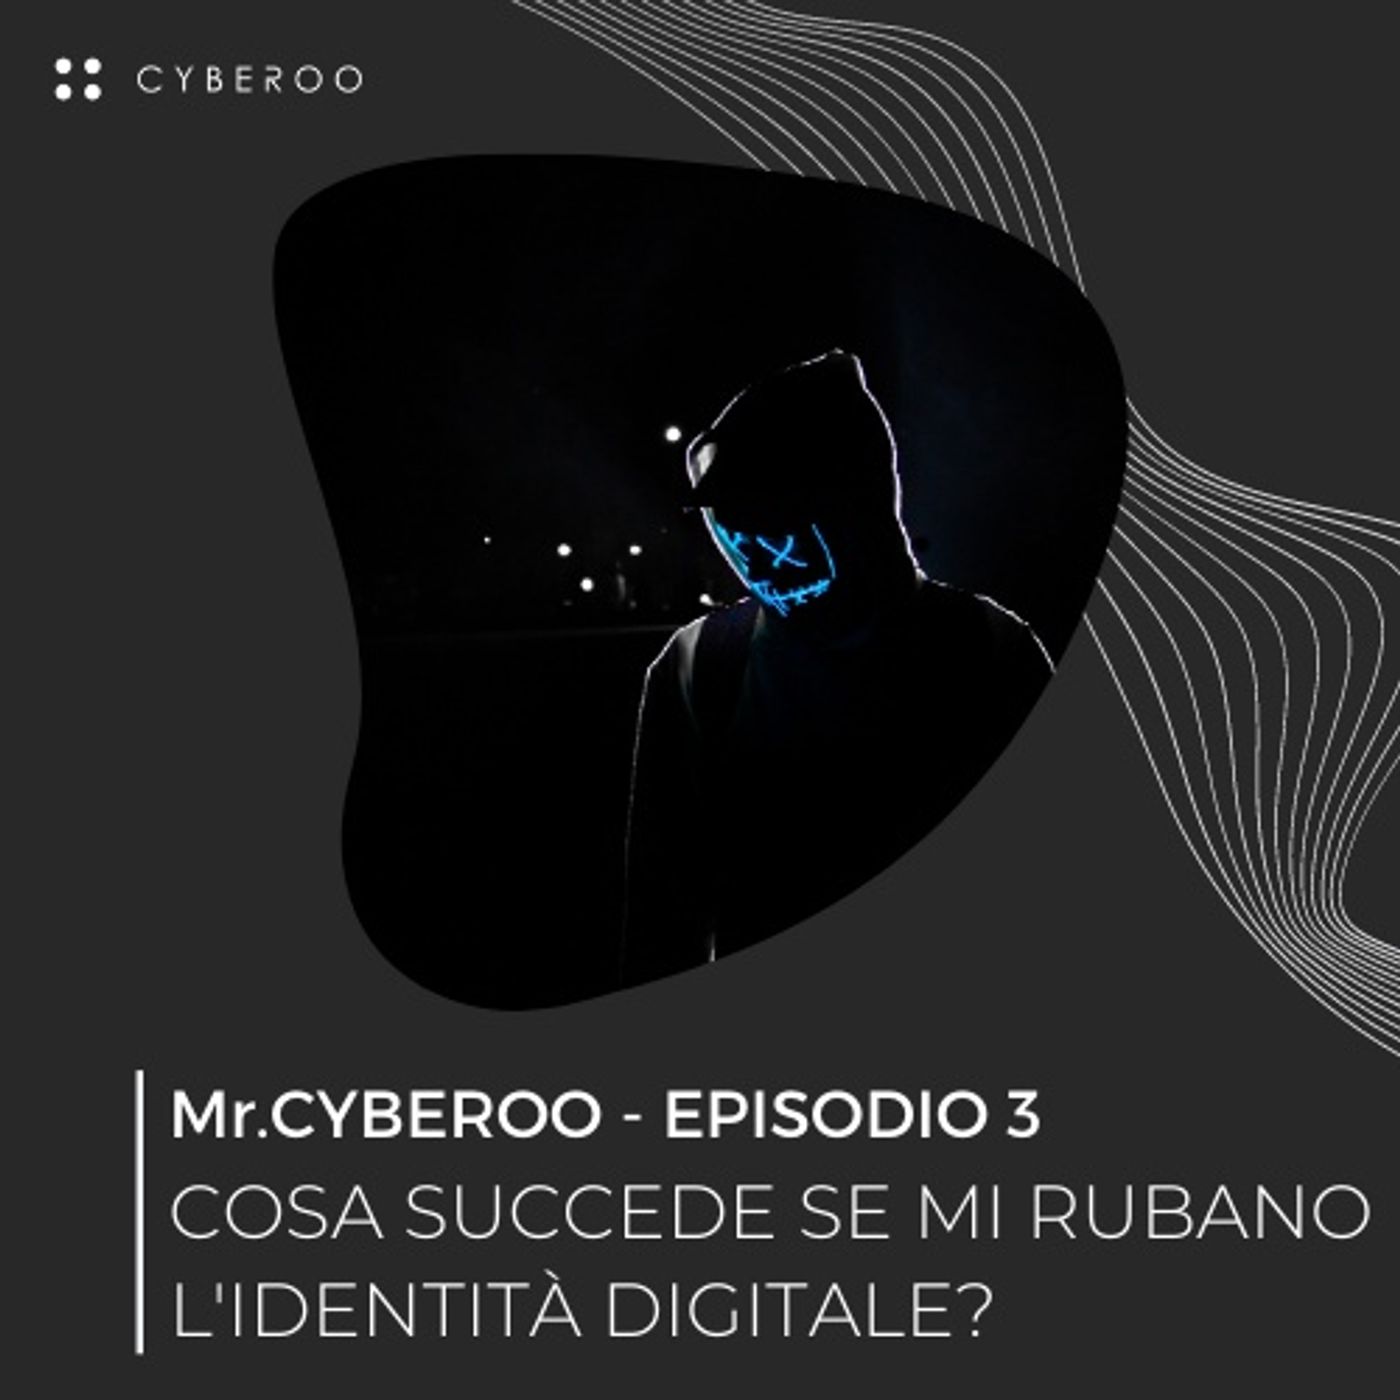 MR. CYBEROO | Episodio 3 - Cosa succede se mi rubano l'identità digitale?